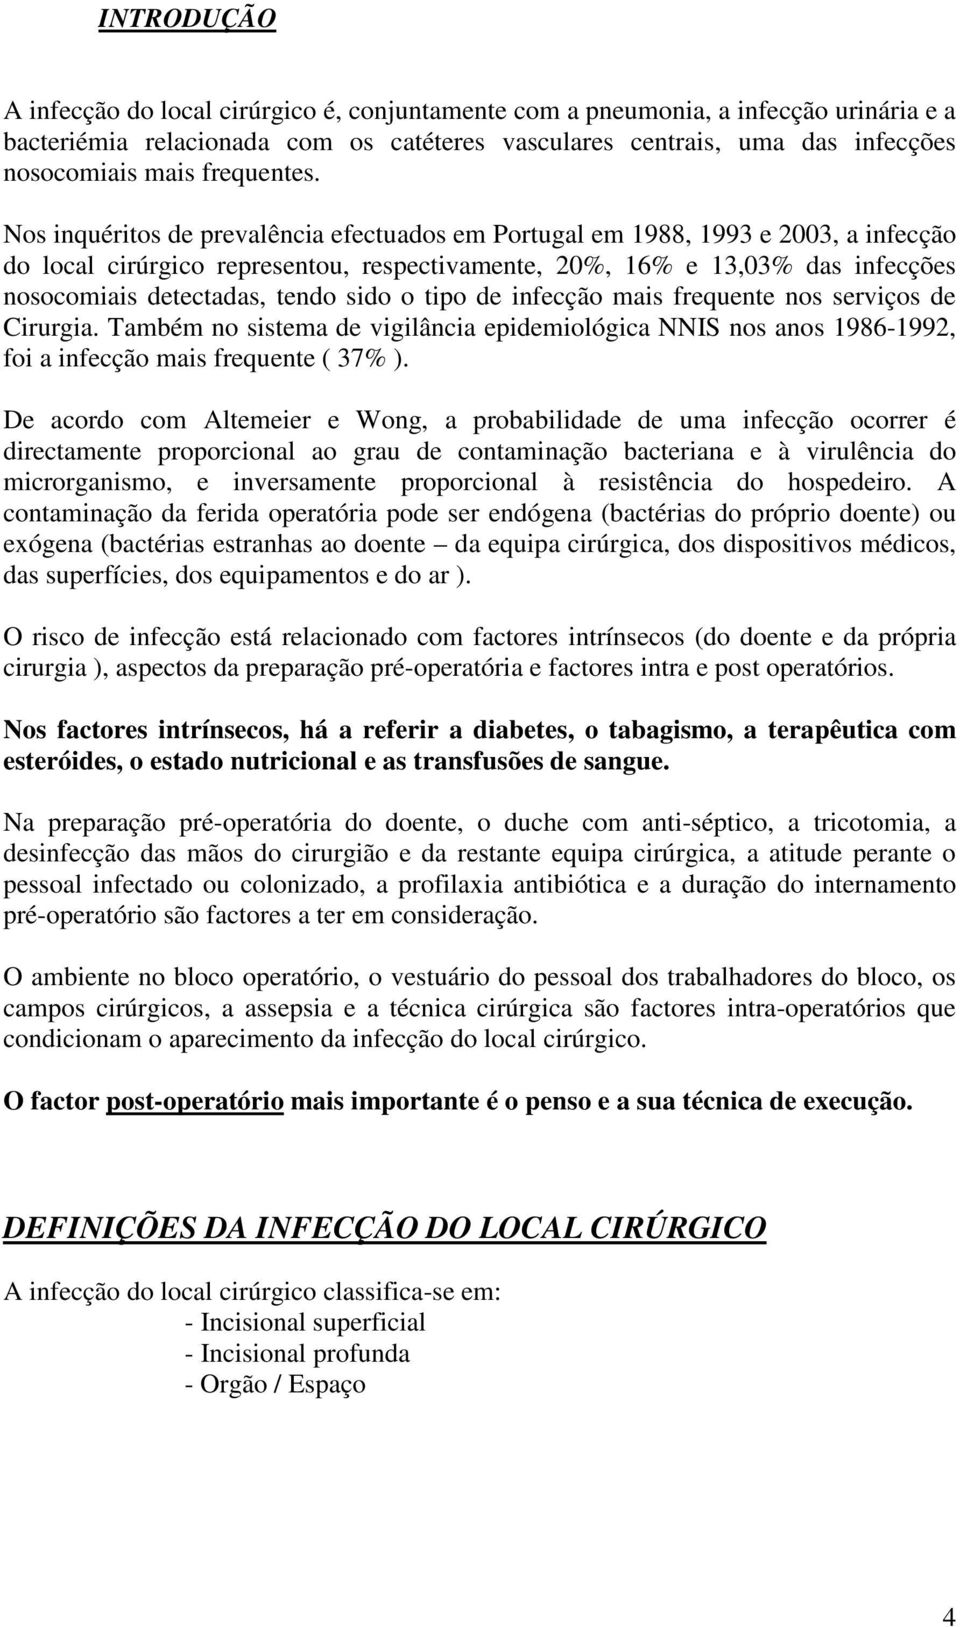 Nos inquéritos de prevalência efectuados em Portugal em 1988, 1993 e 2003, a infecção do local cirúrgico representou, respectivamente, 20%, 16% e 13,03% das infecções nosocomiais detectadas, tendo